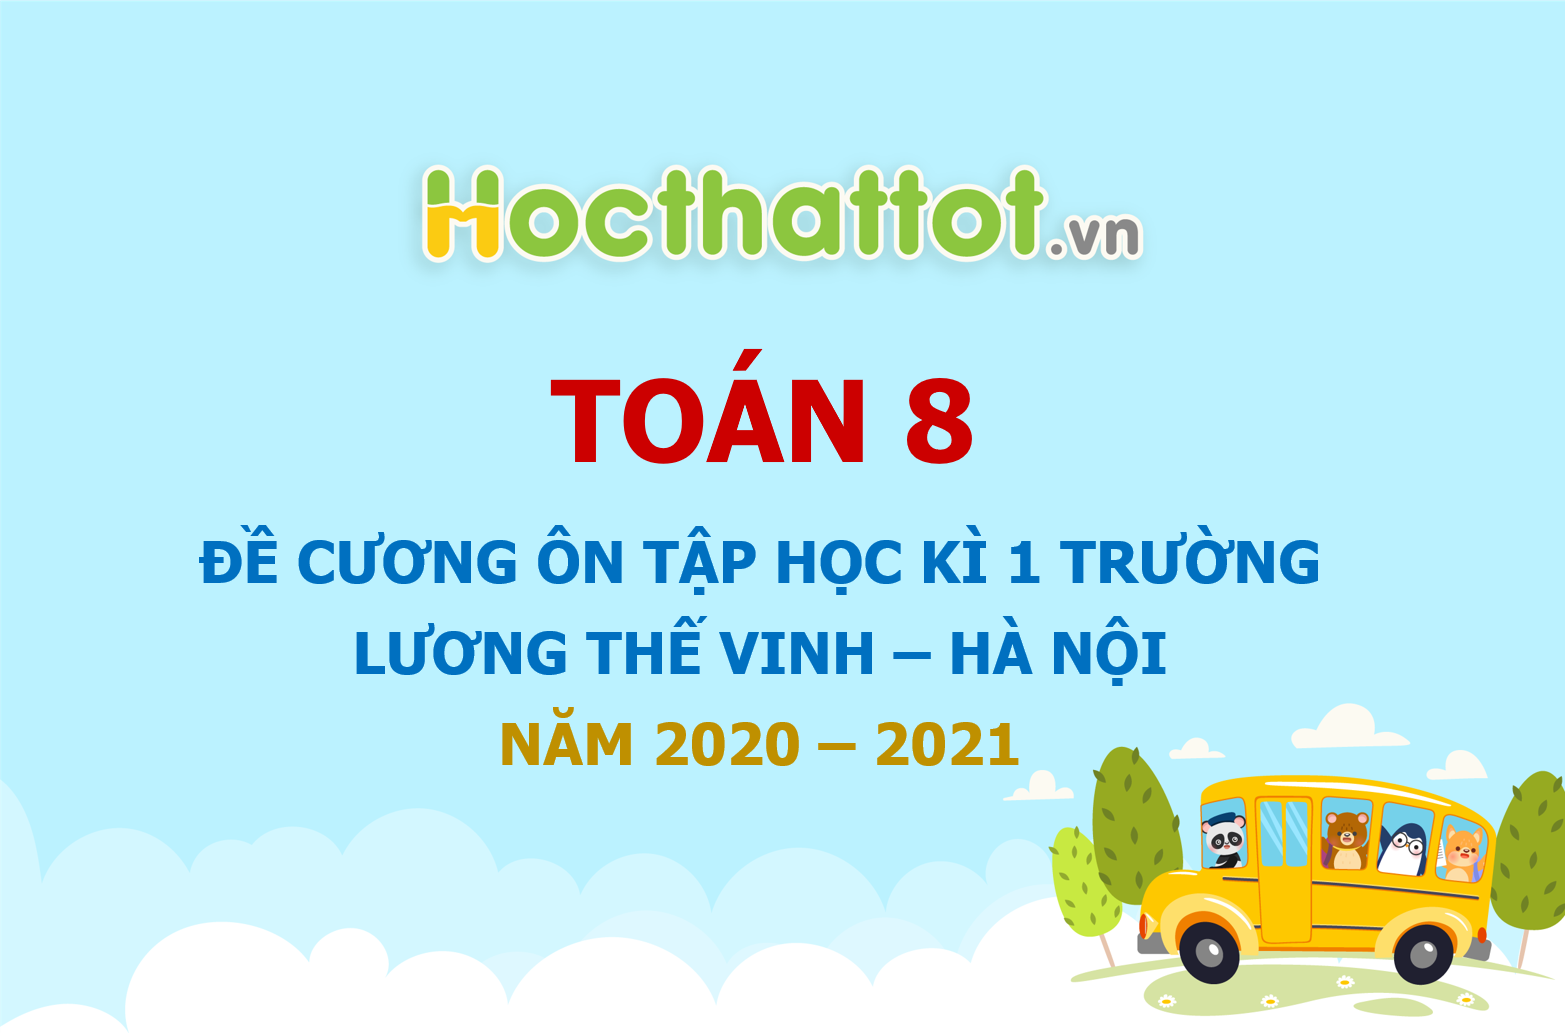 de-cuong-on-tap-hoc-ki-1-toan-8-nam-2020-2021-truong-luong-the-vinh-ha-noi